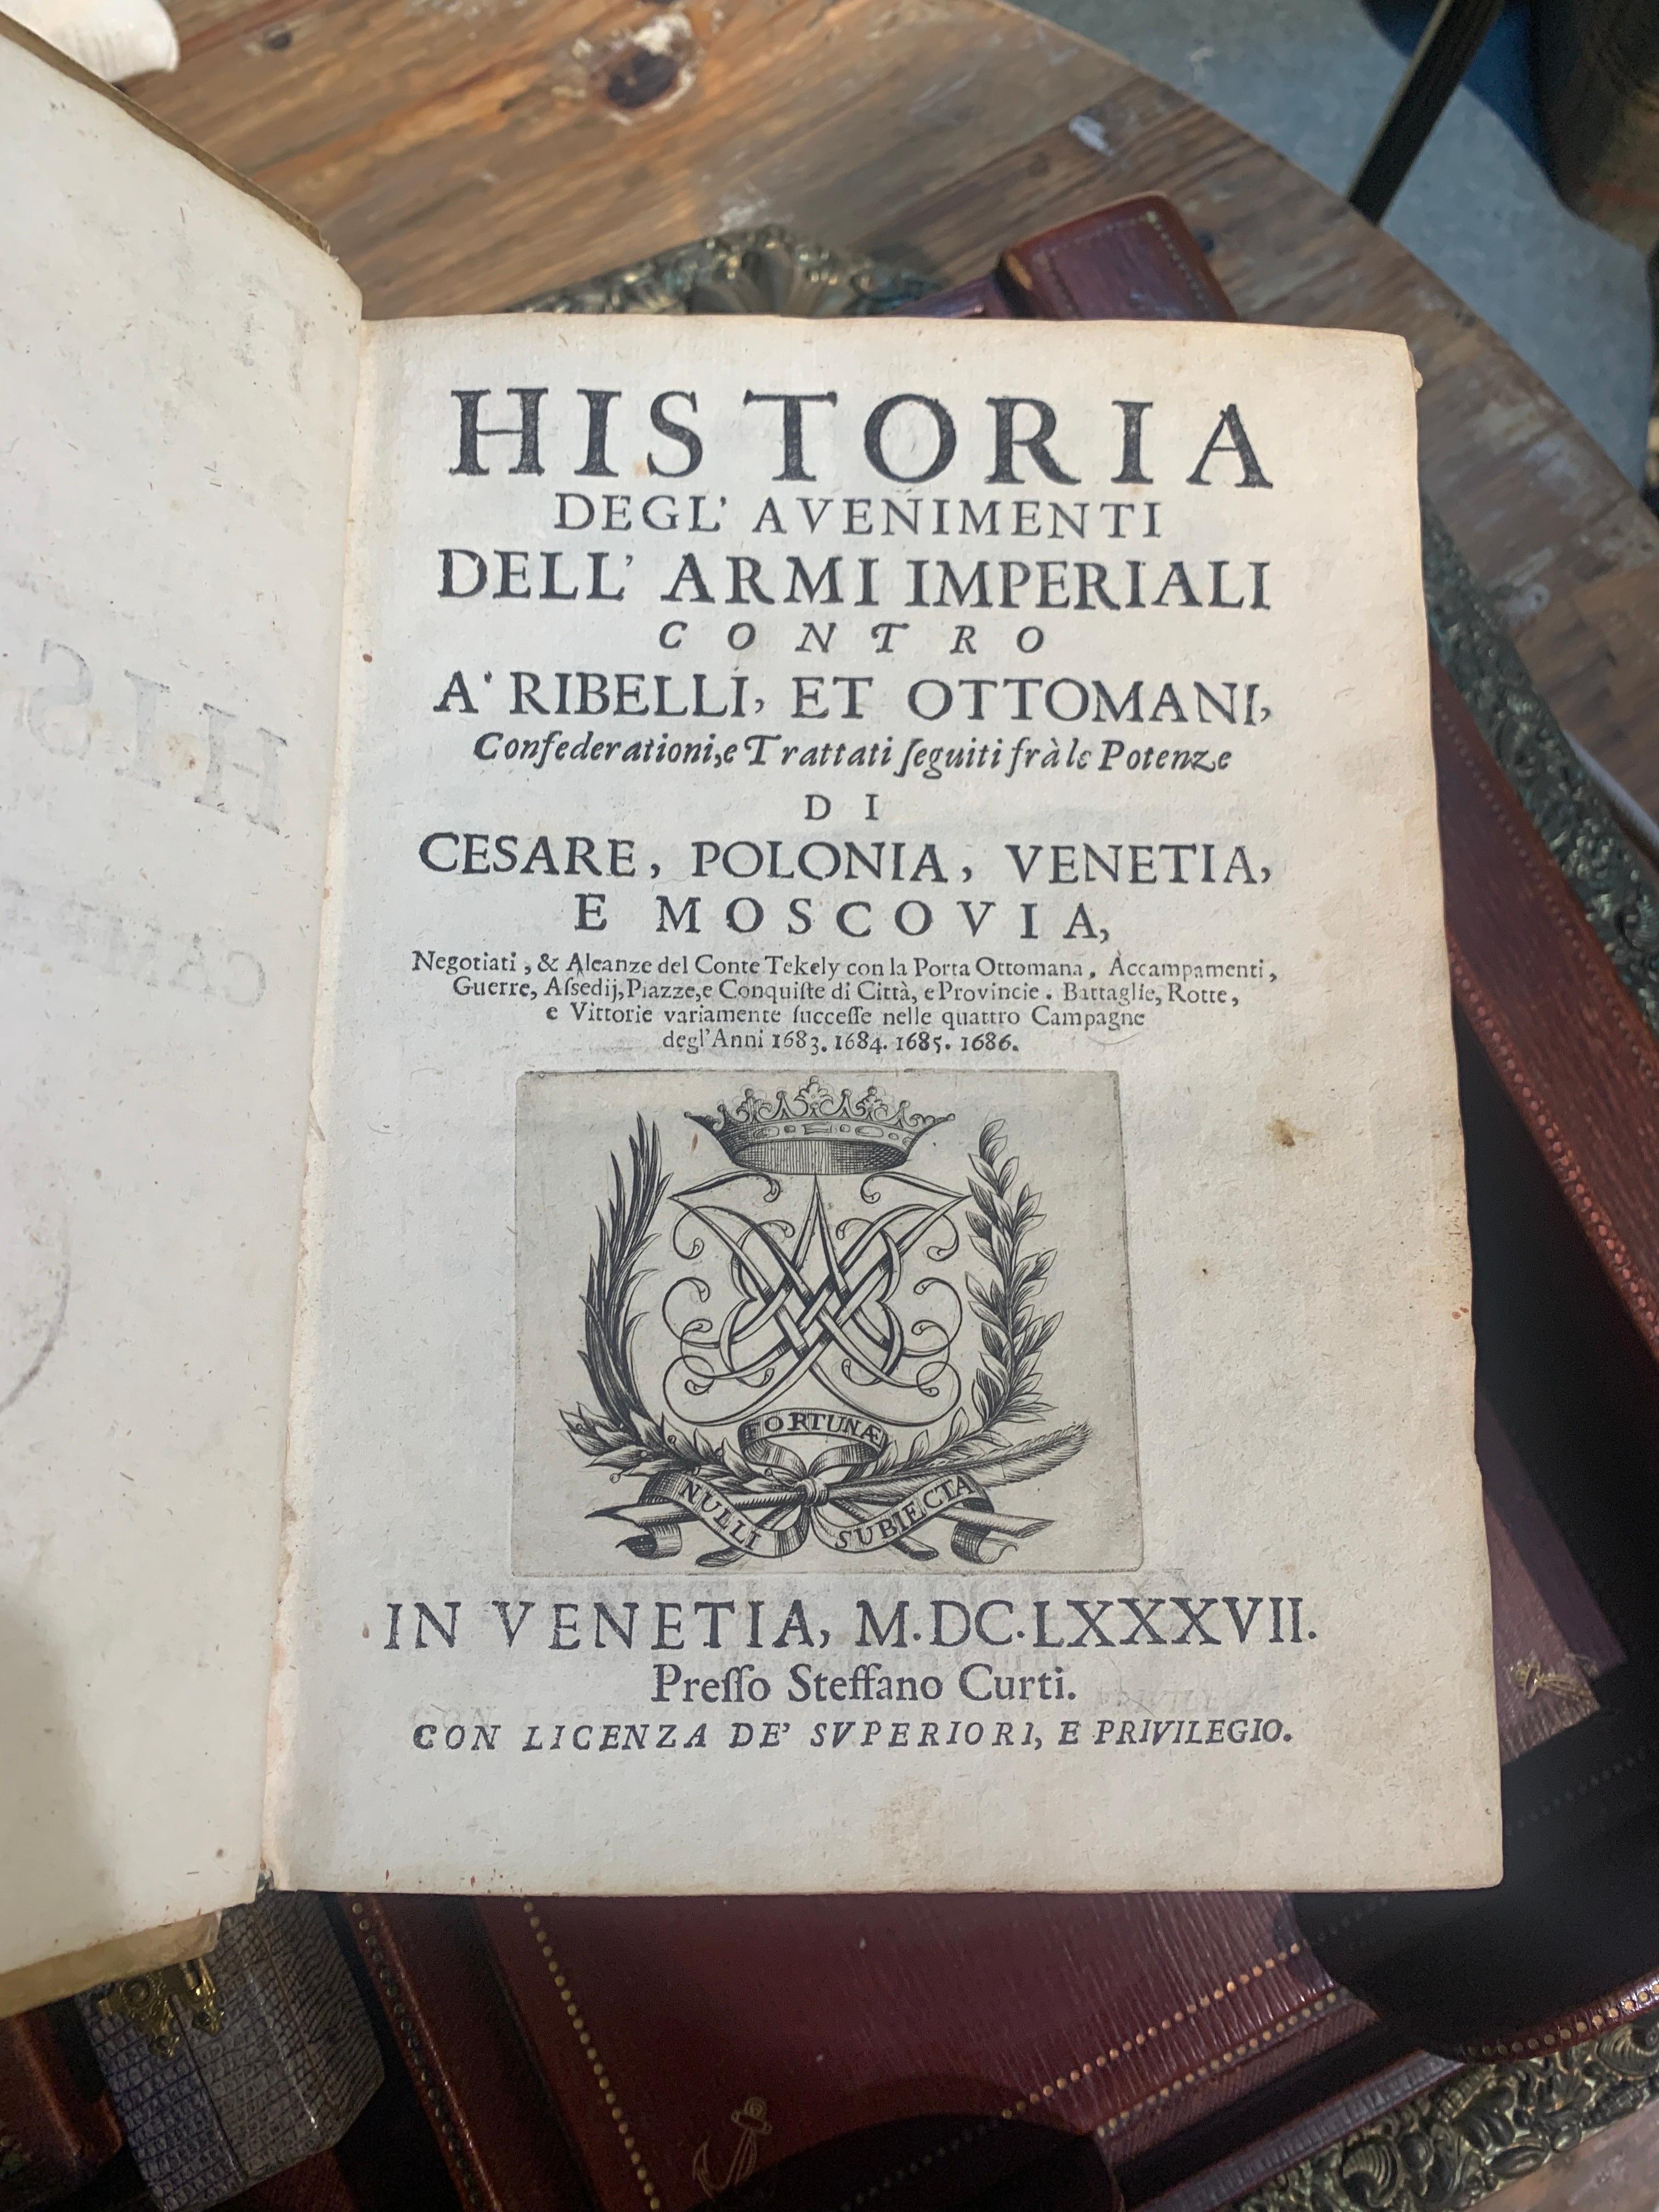 17th Century Italian Rare Edition of Historia Dell'Armi Imperiali from Venice 1687 For Sale